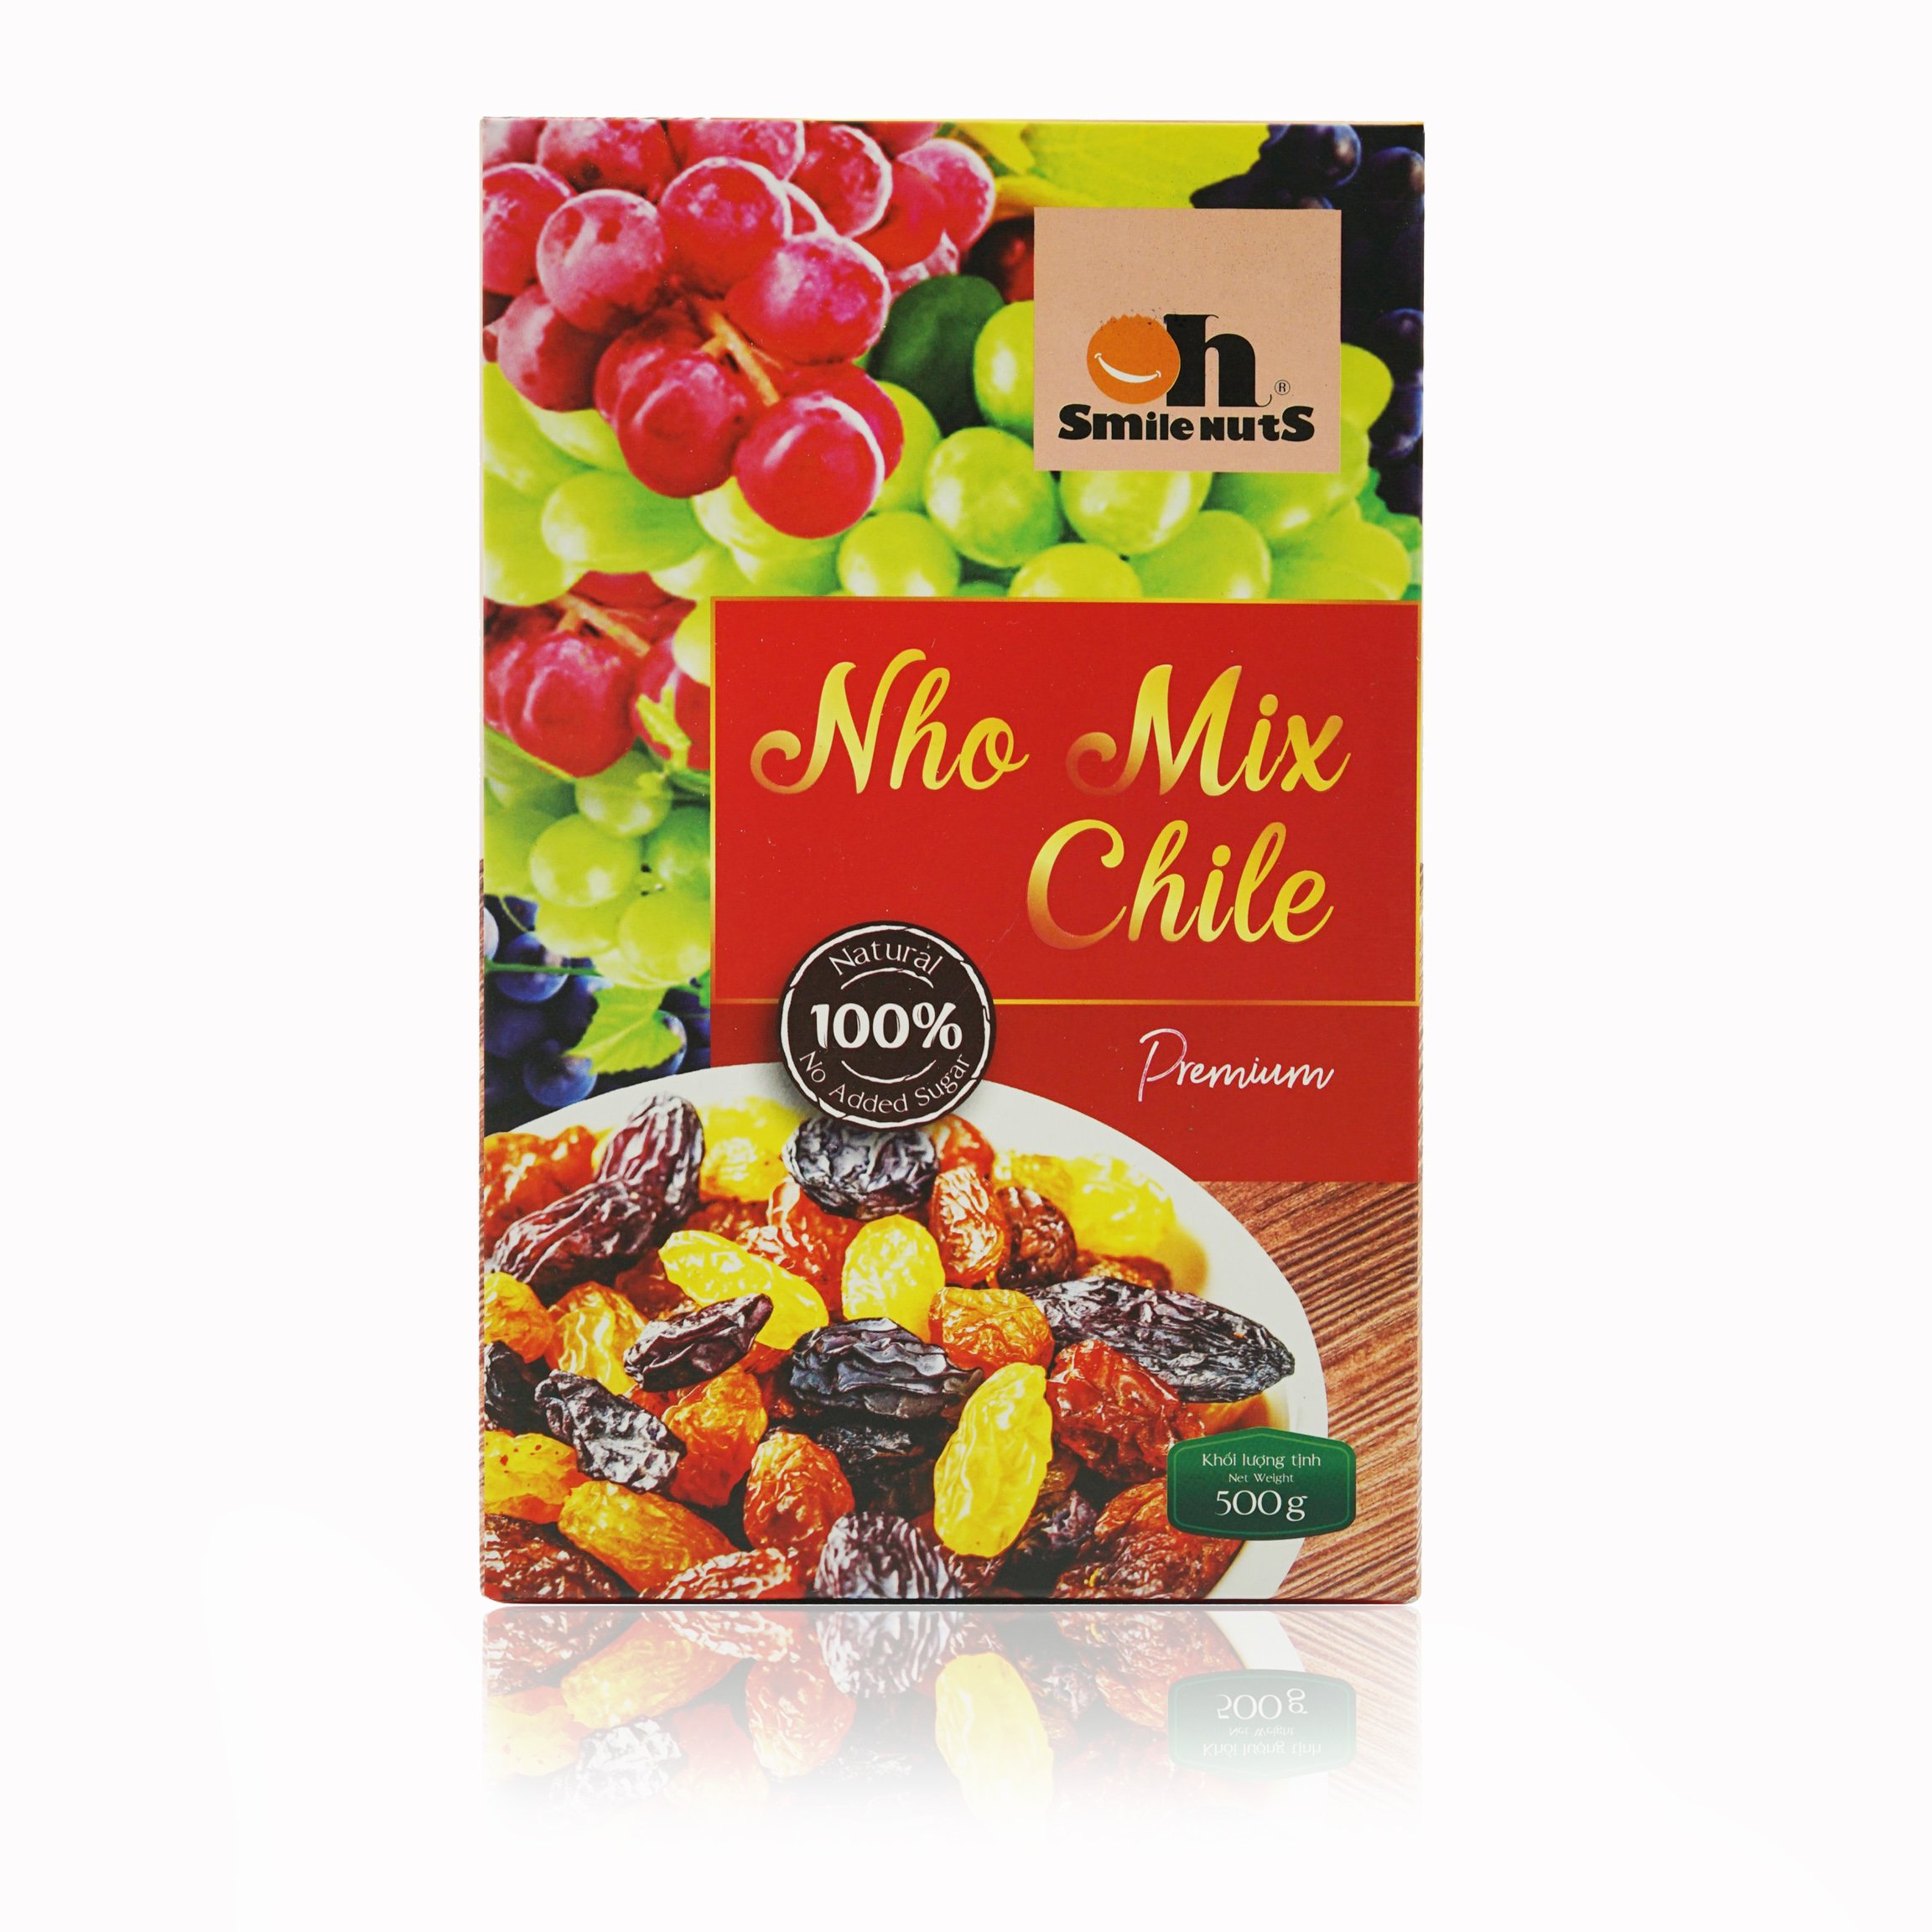 Nho Khô Mix Không Hạt Smile Nuts Hộp 500g - Nhập khẩu từ Chile (nho khô hỗn hợp gồm nho đen, nho đỏ và nho vàng)